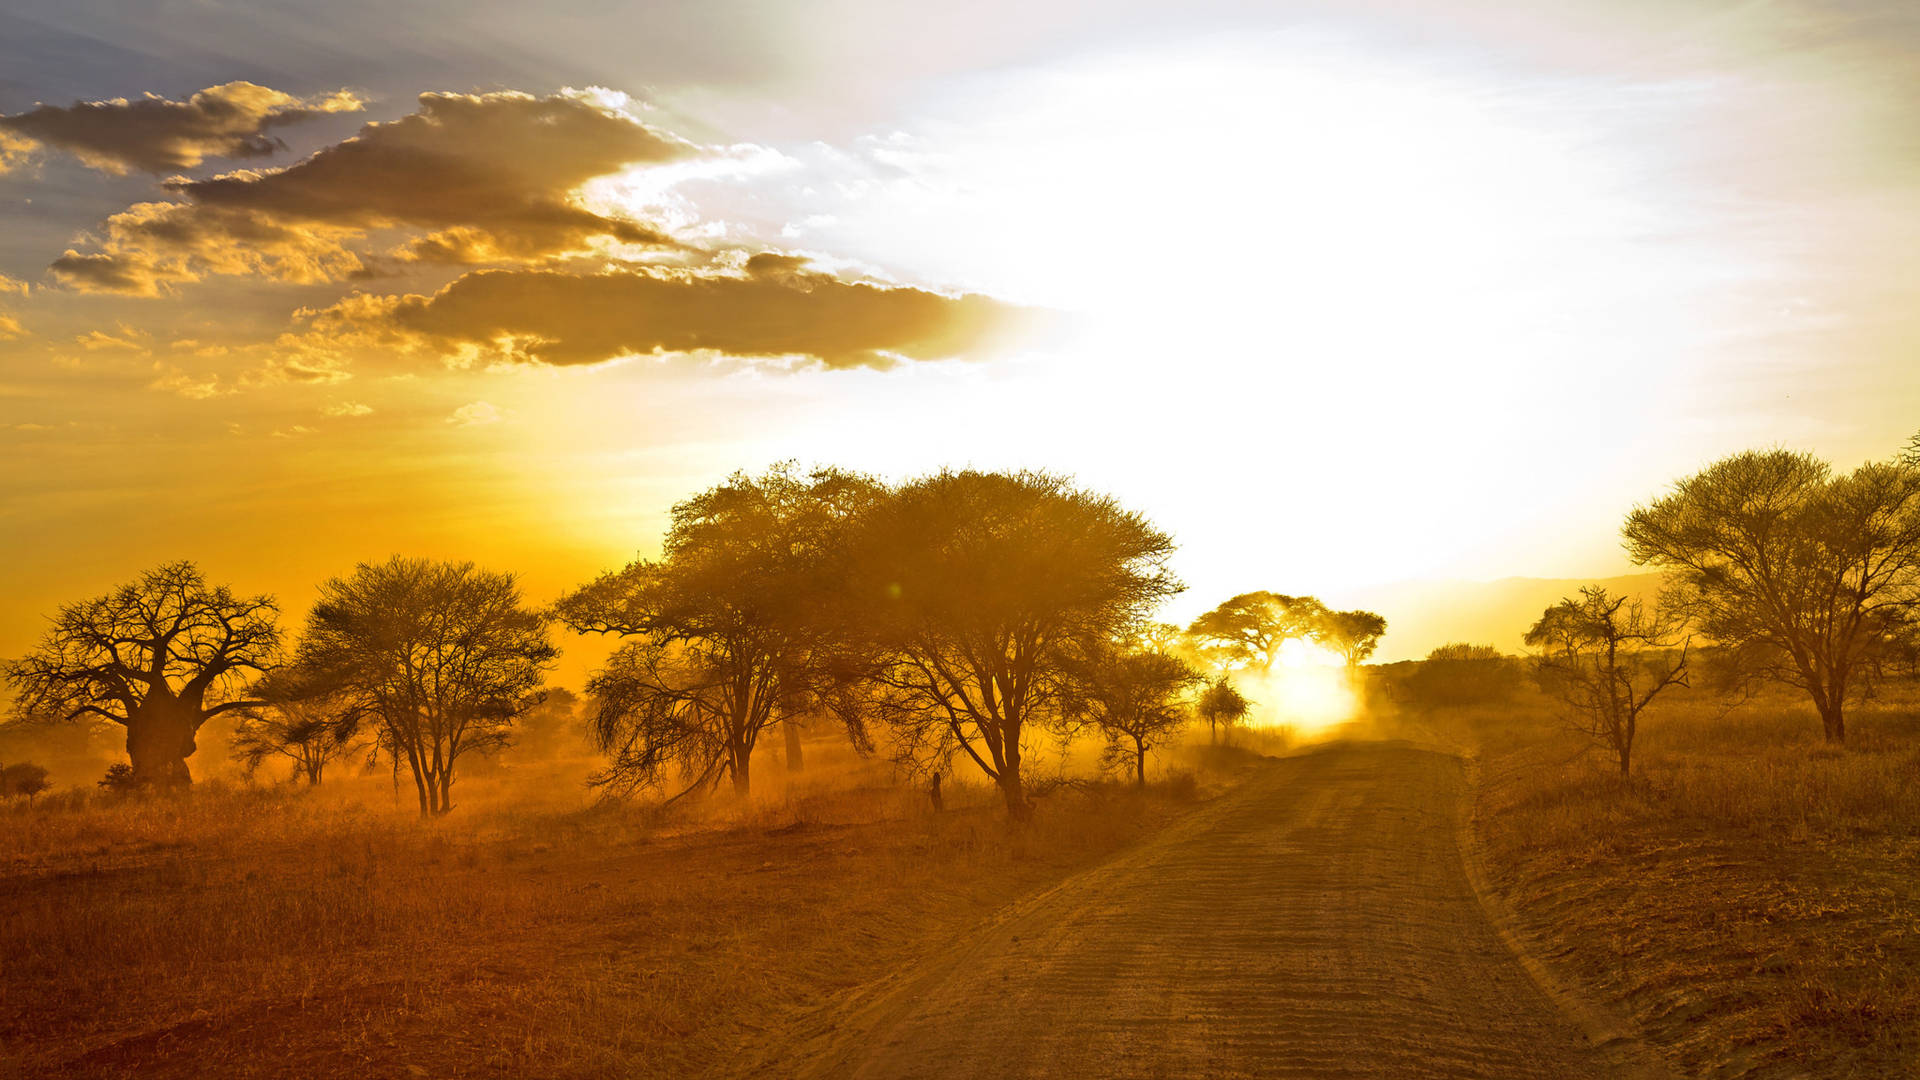 Desert Road In Africa 4k